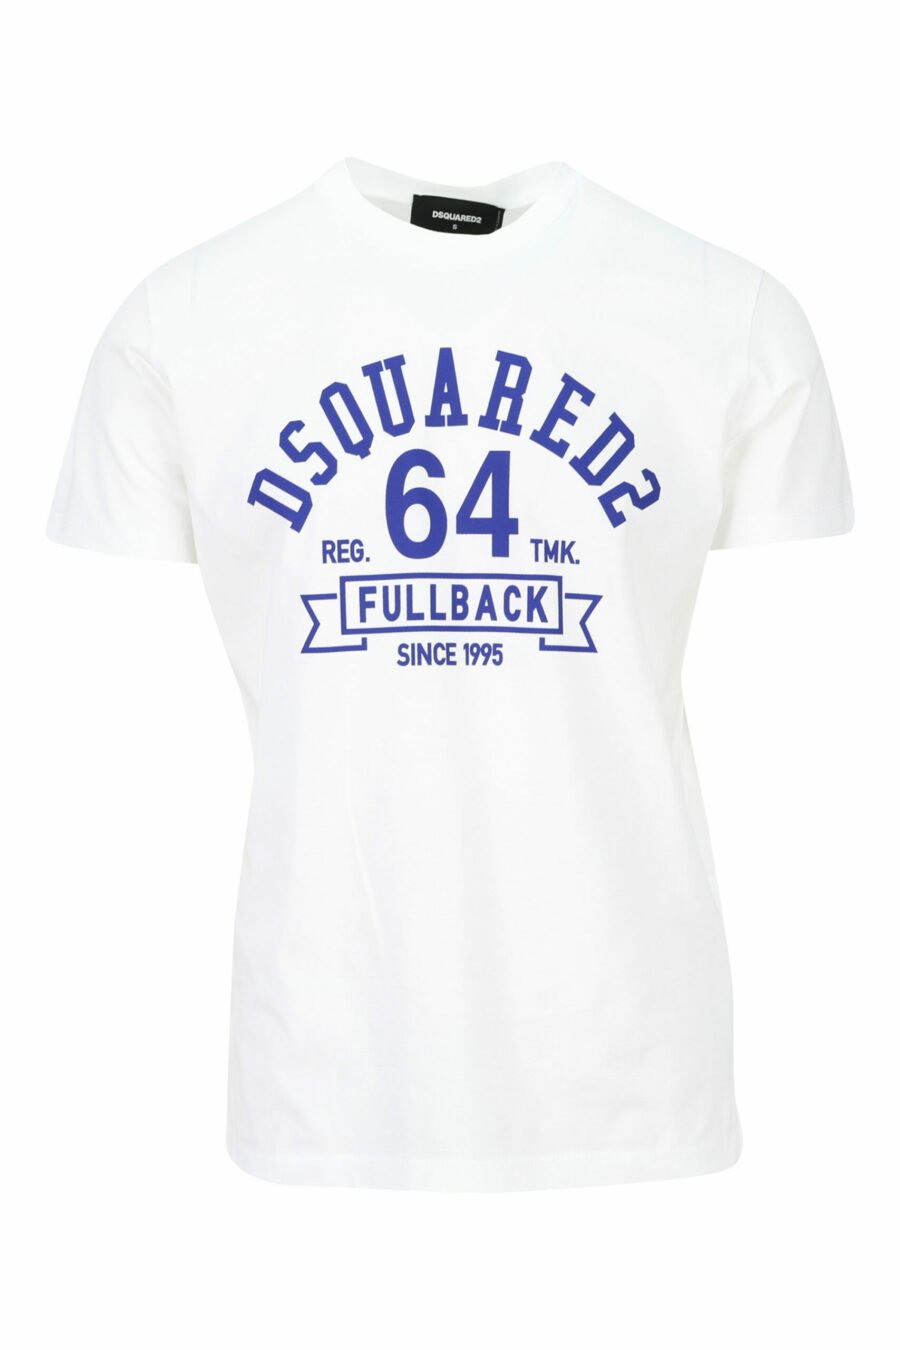 T-shirt branca com maxilogo "college" azul - 8054148086442 scaled